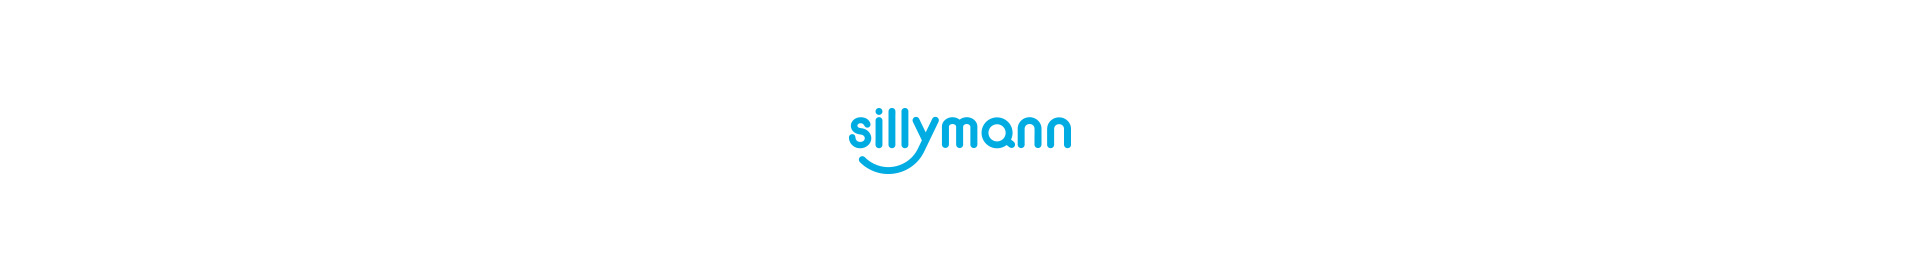 sillymann